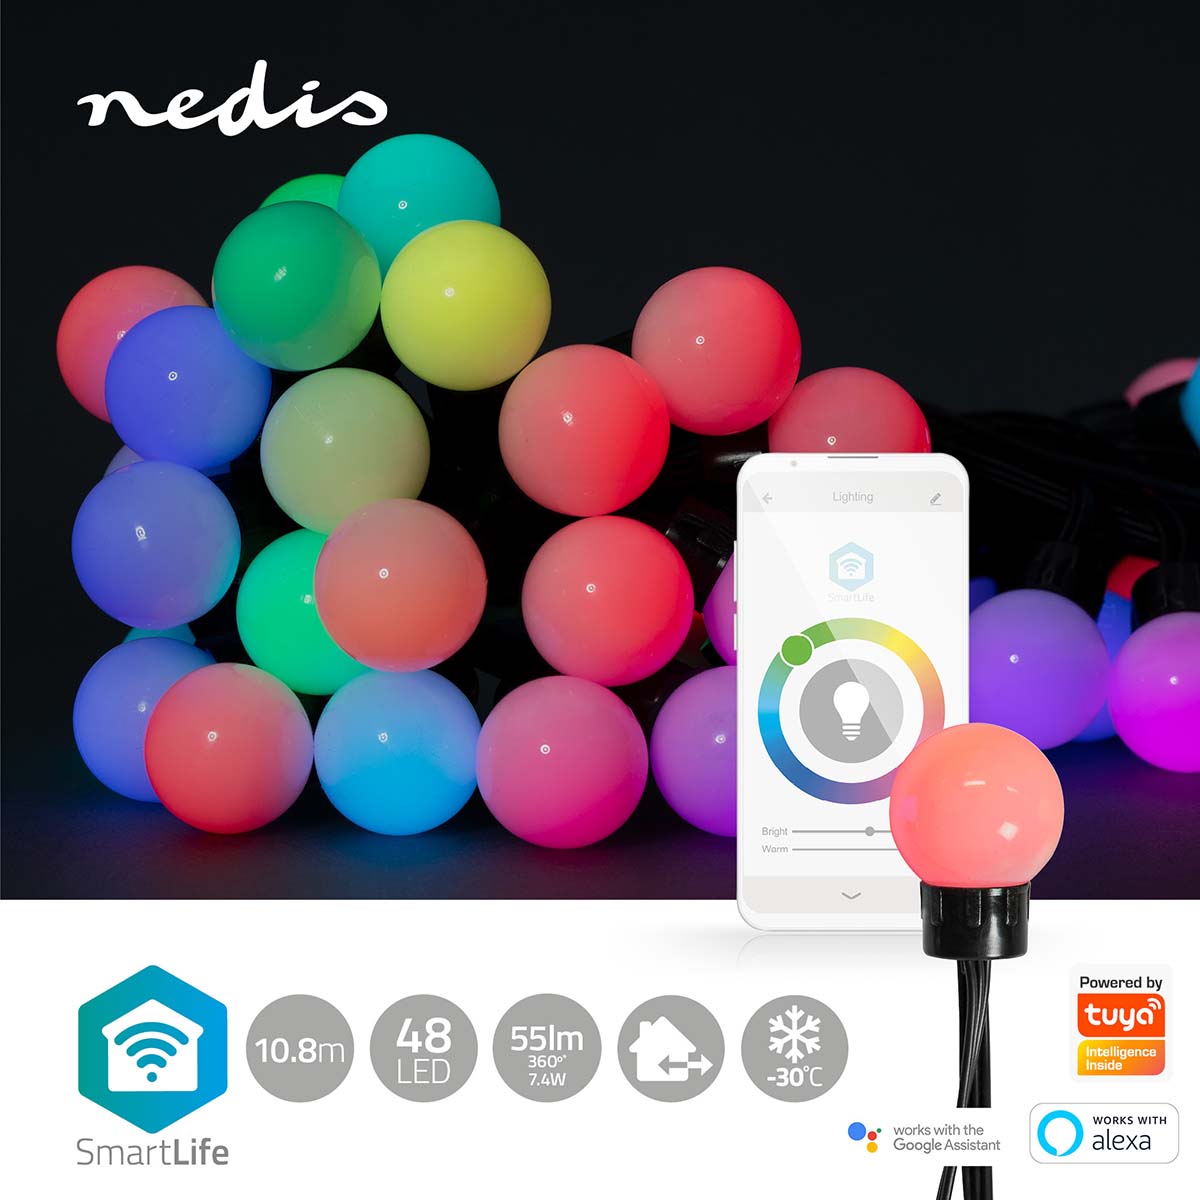 Luzes decorativas Nedis Wi-Fi RGB (10 LEDs, 50mm, 9m): iluminação inteligente para personalizar ambientes com facilidade e estilo.